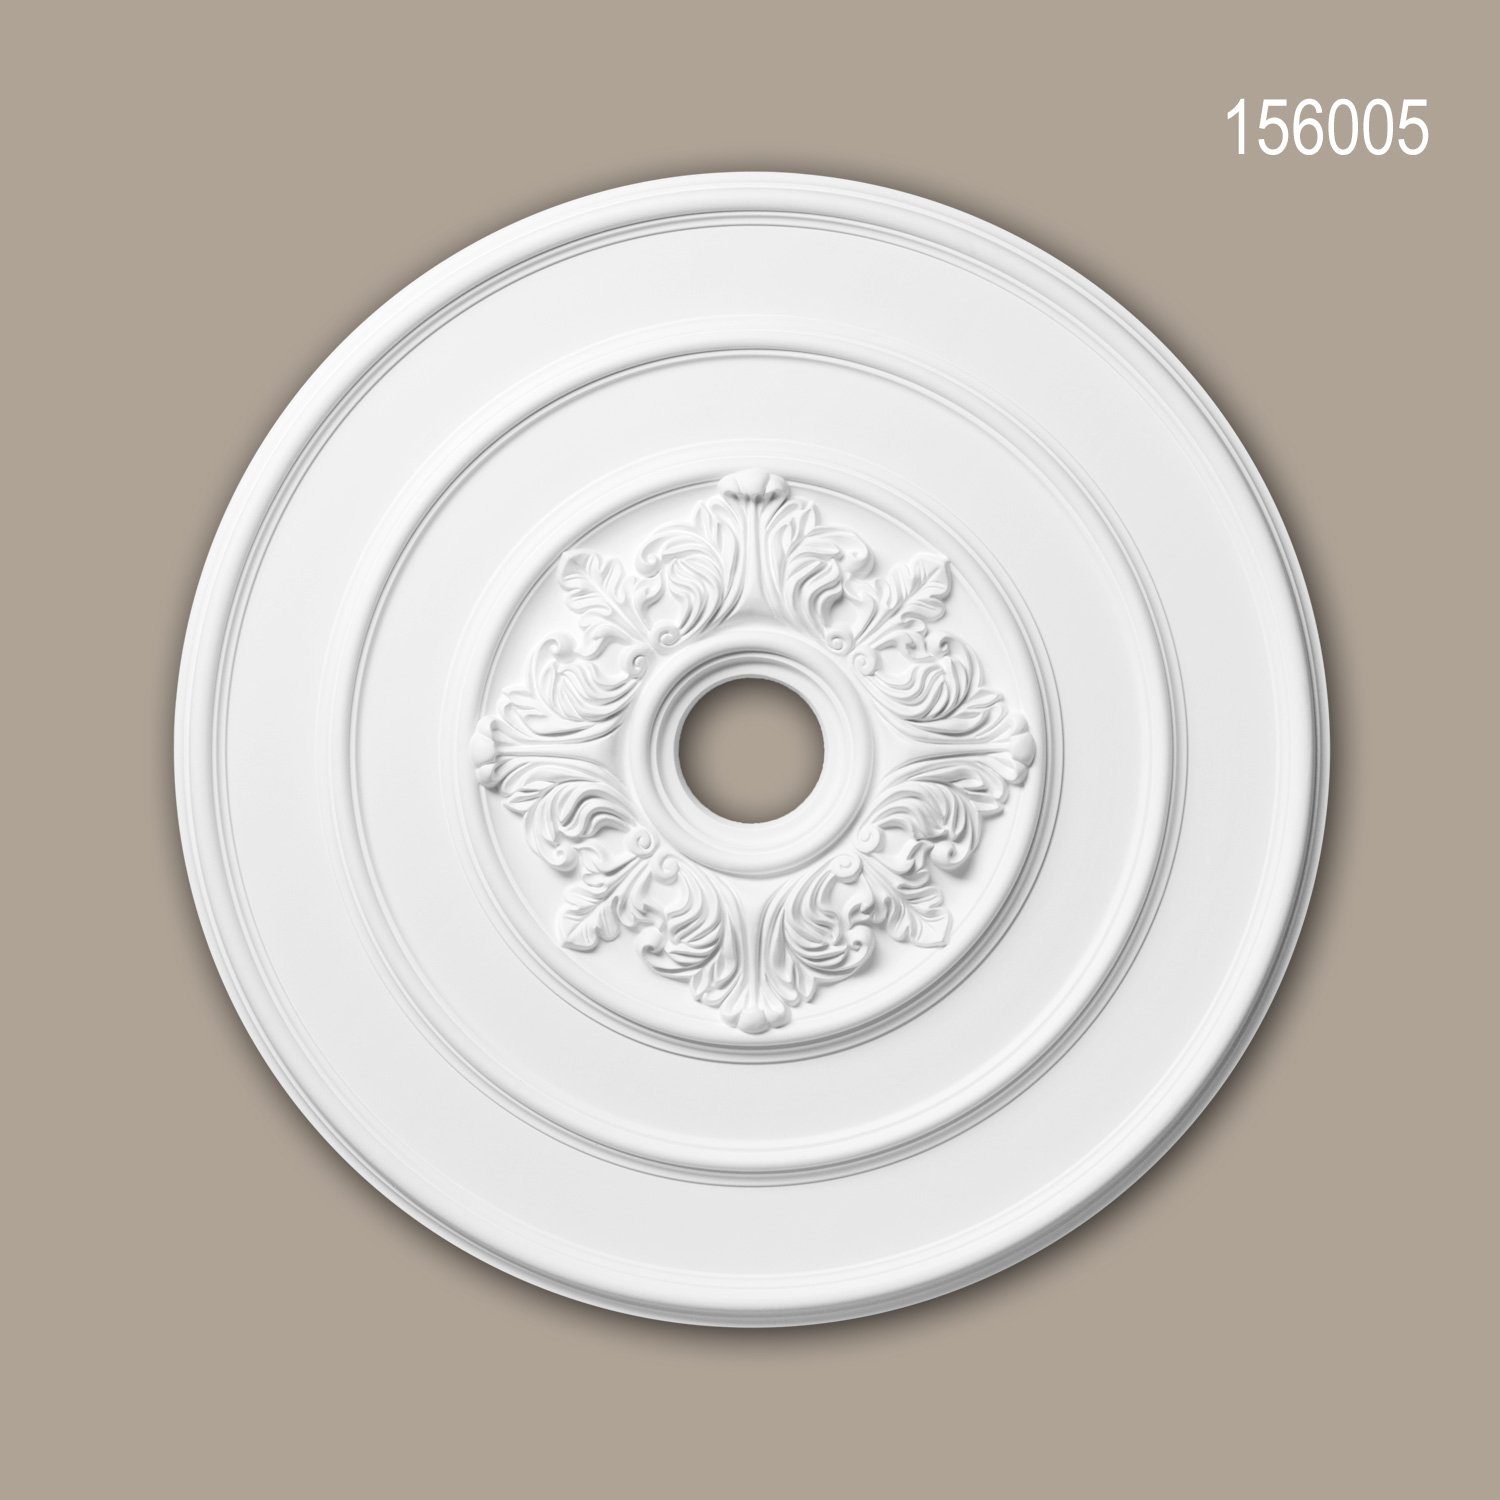 Stil: weiß, 156005 Deckenrosette, cm), vorgrundiert, 1 Stuckrosette, Profhome Durchmesser Neo-Klassizismus Medallion, Deckenelement, St., 65,6 Decken-Rosette (Rosette, Zierelement,